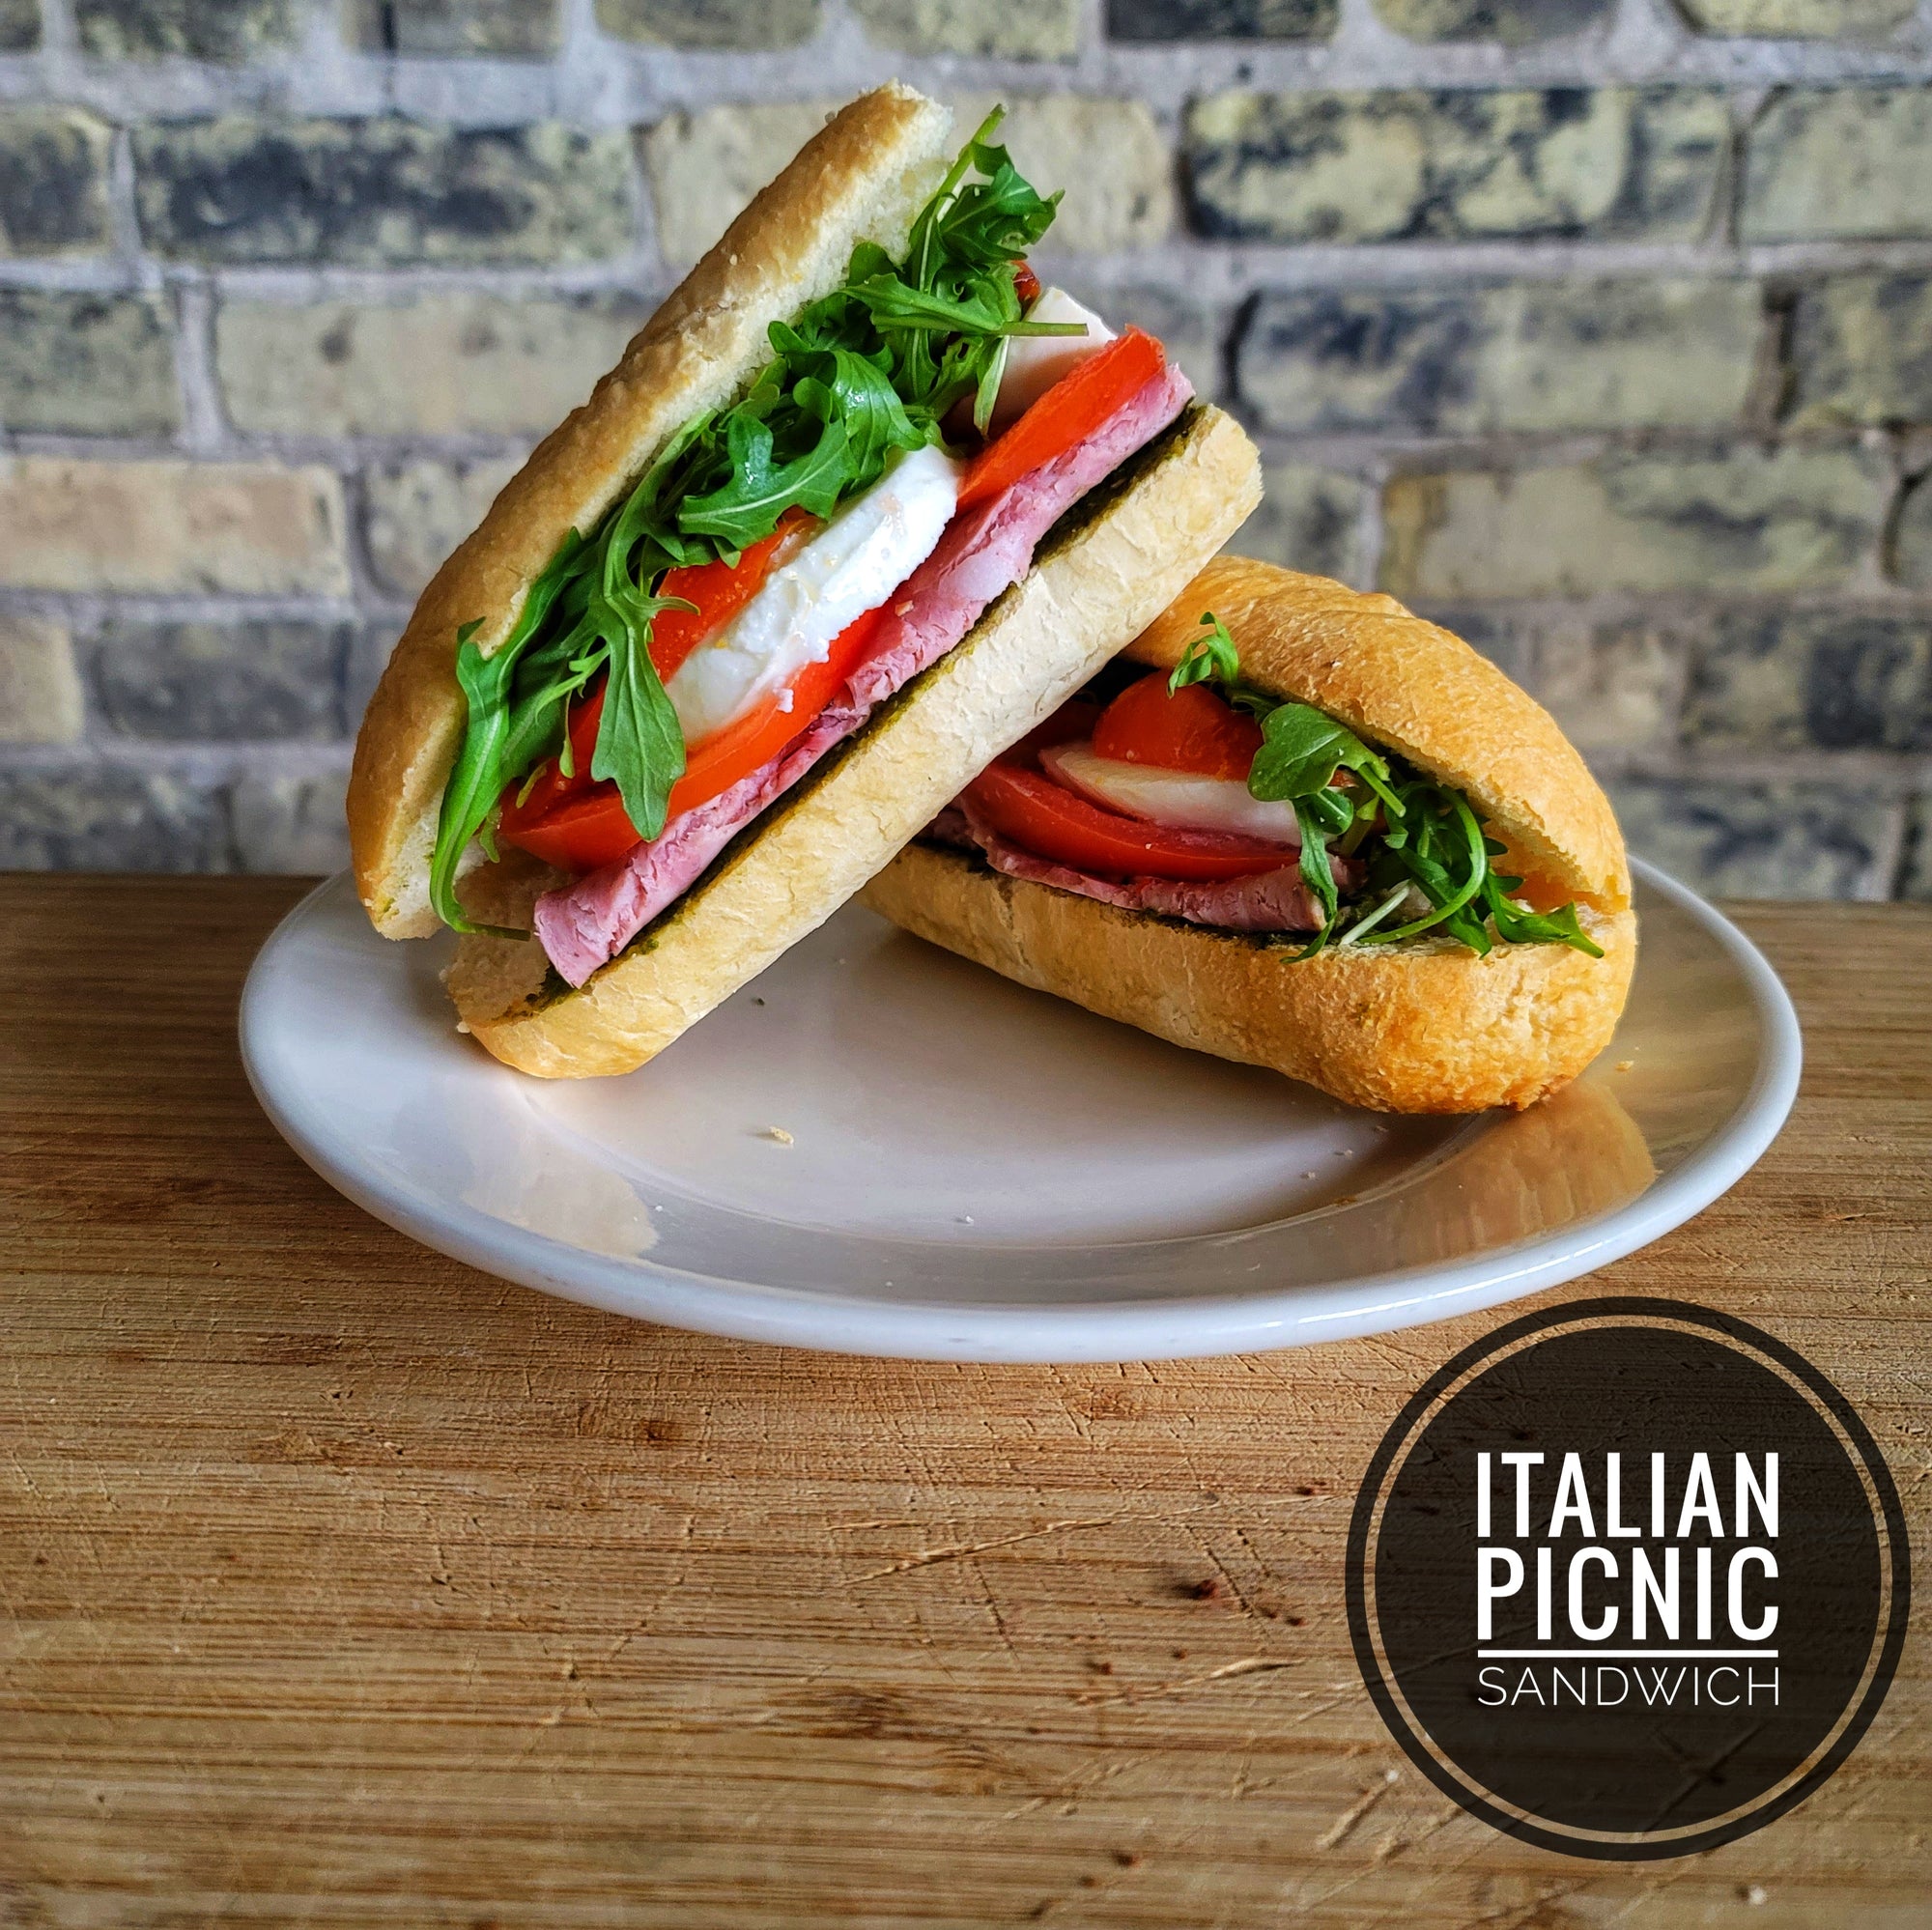 Italian Picnic Sandwich, Meat